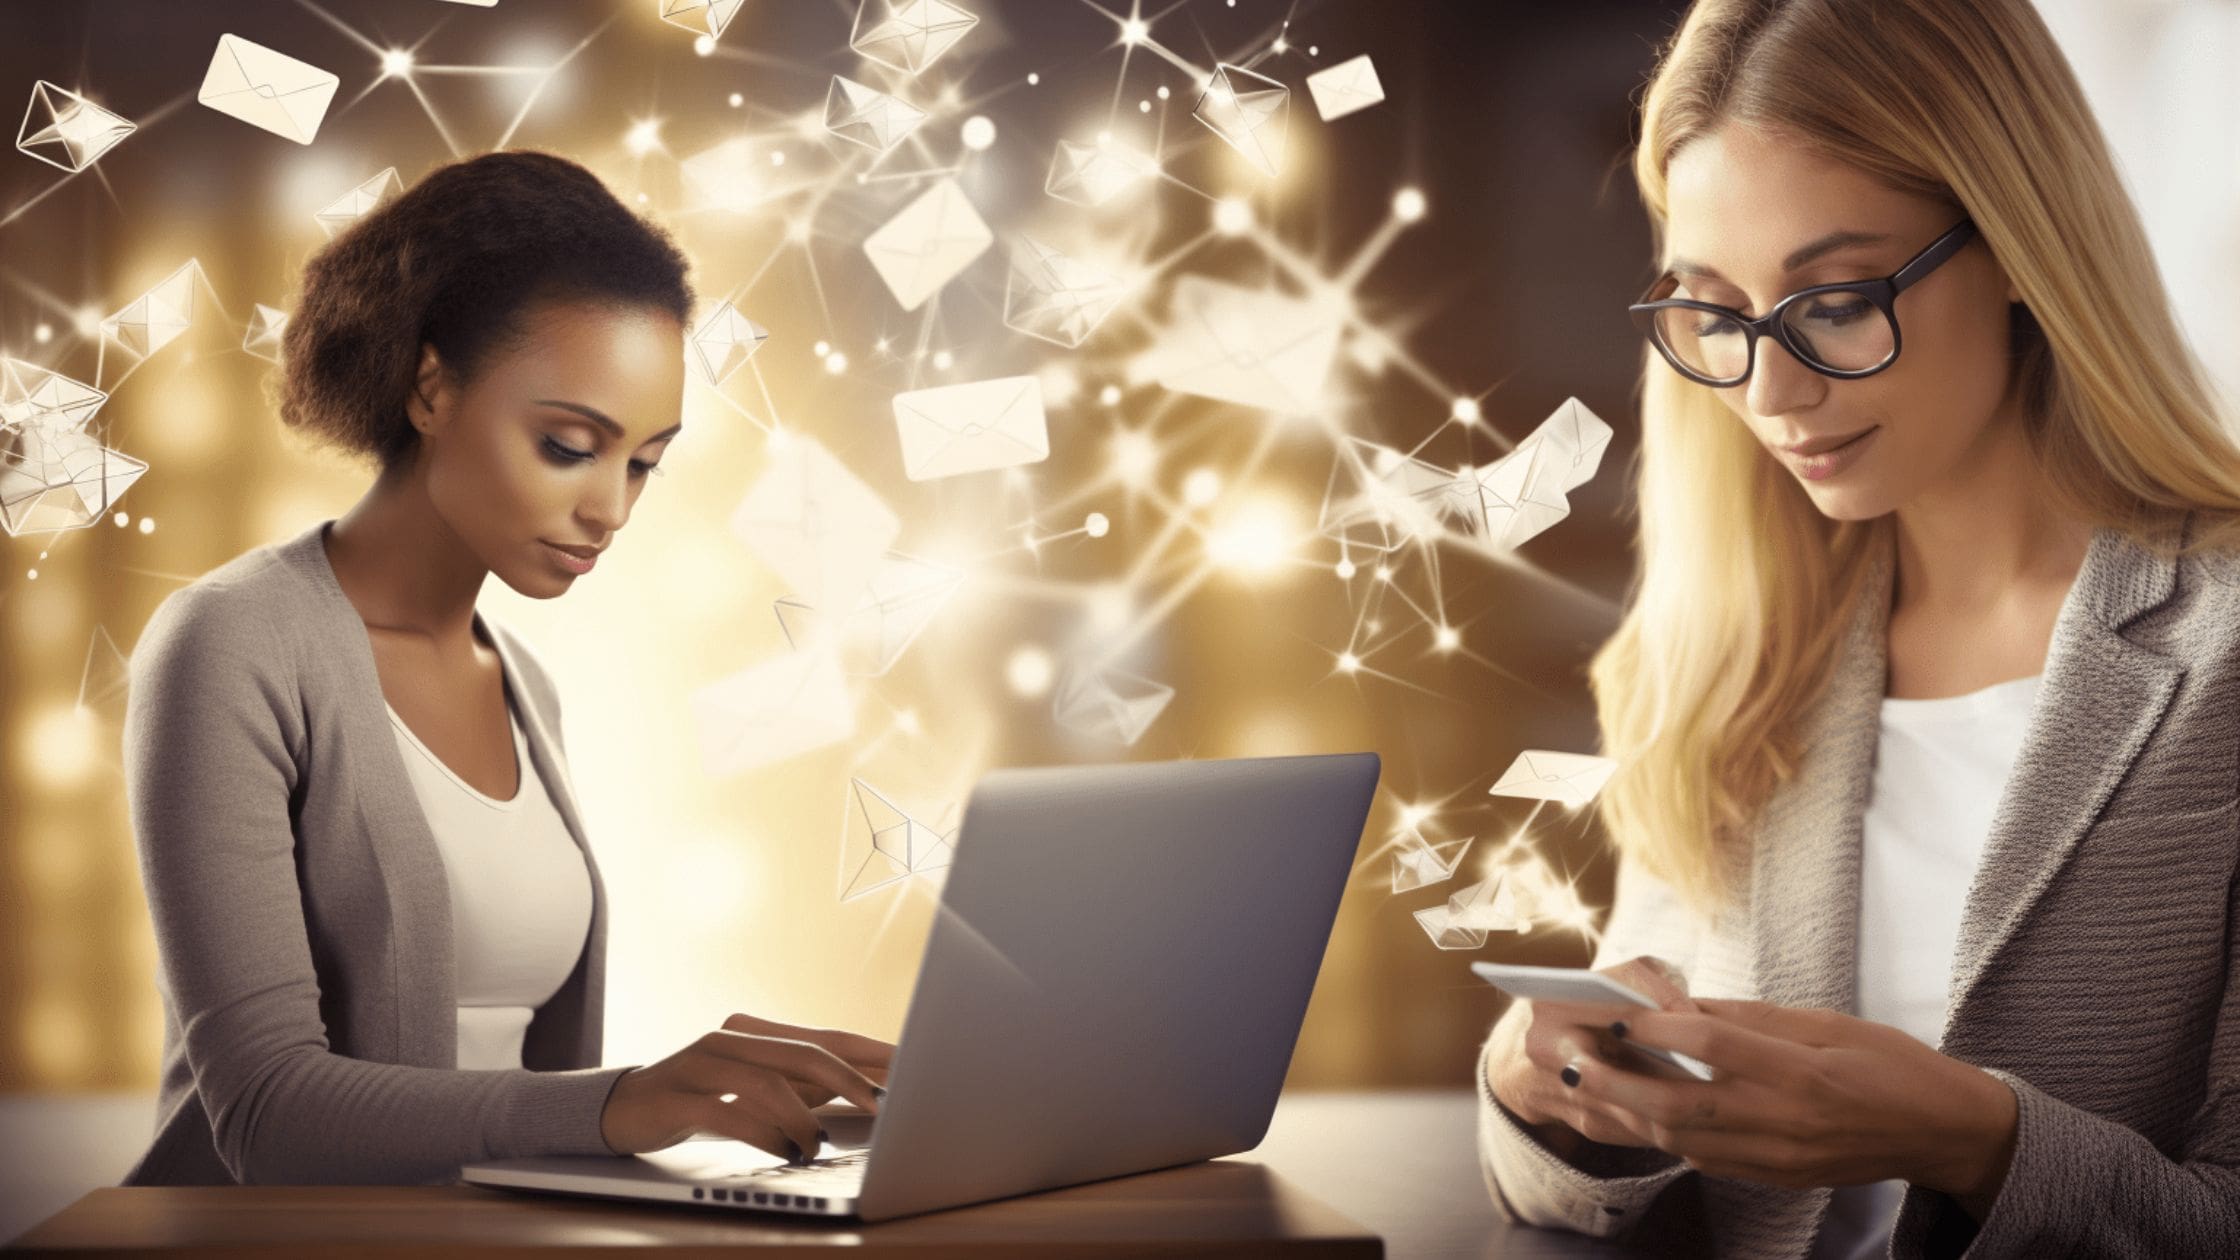 Une femme métisse devant un ordinateur entourée d'enveloppe email avec une autre femme blonde en face qui réceptionne les emails.